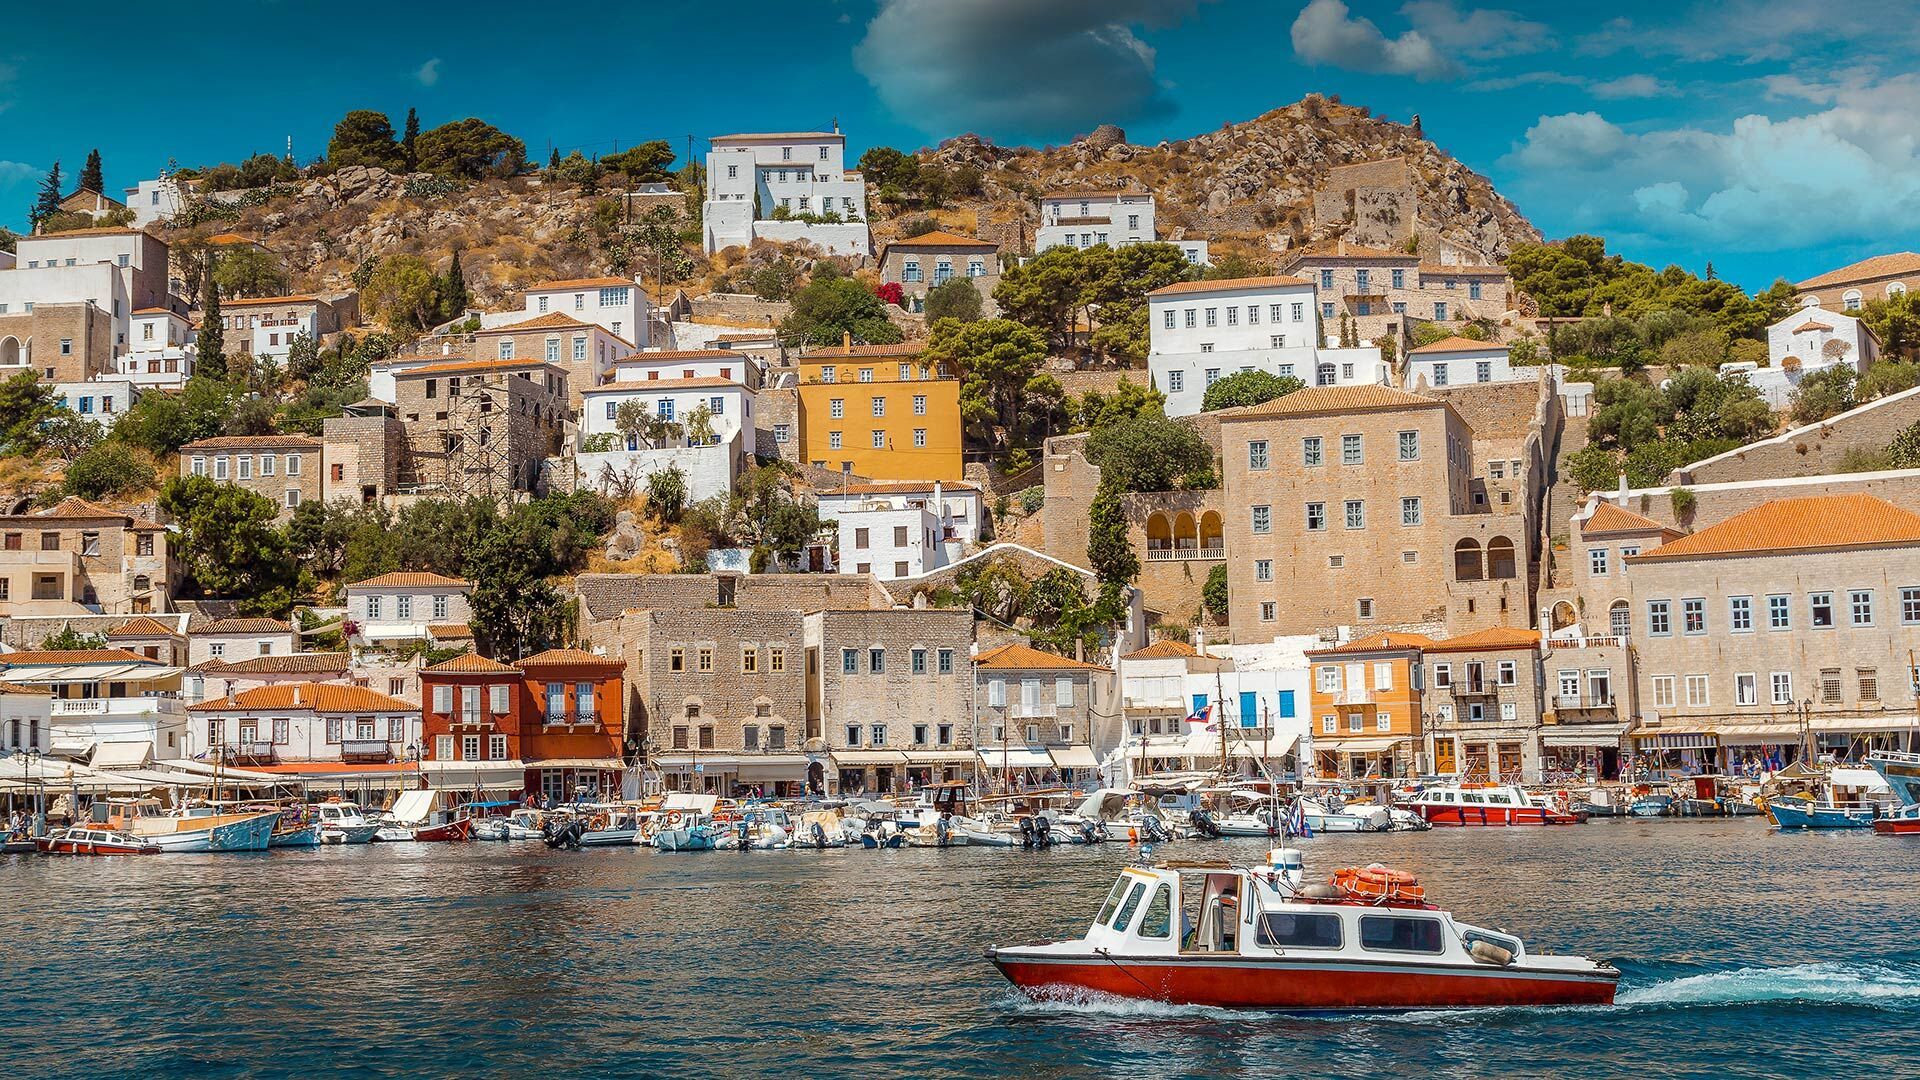 Ύδρα: Το travelgirl.gr σε ξεναγεί στο νησί που δεν κυκλοφορούν αυτοκίνητα!Πηγή φωτογραφίας: https://www.discovergreece.com/